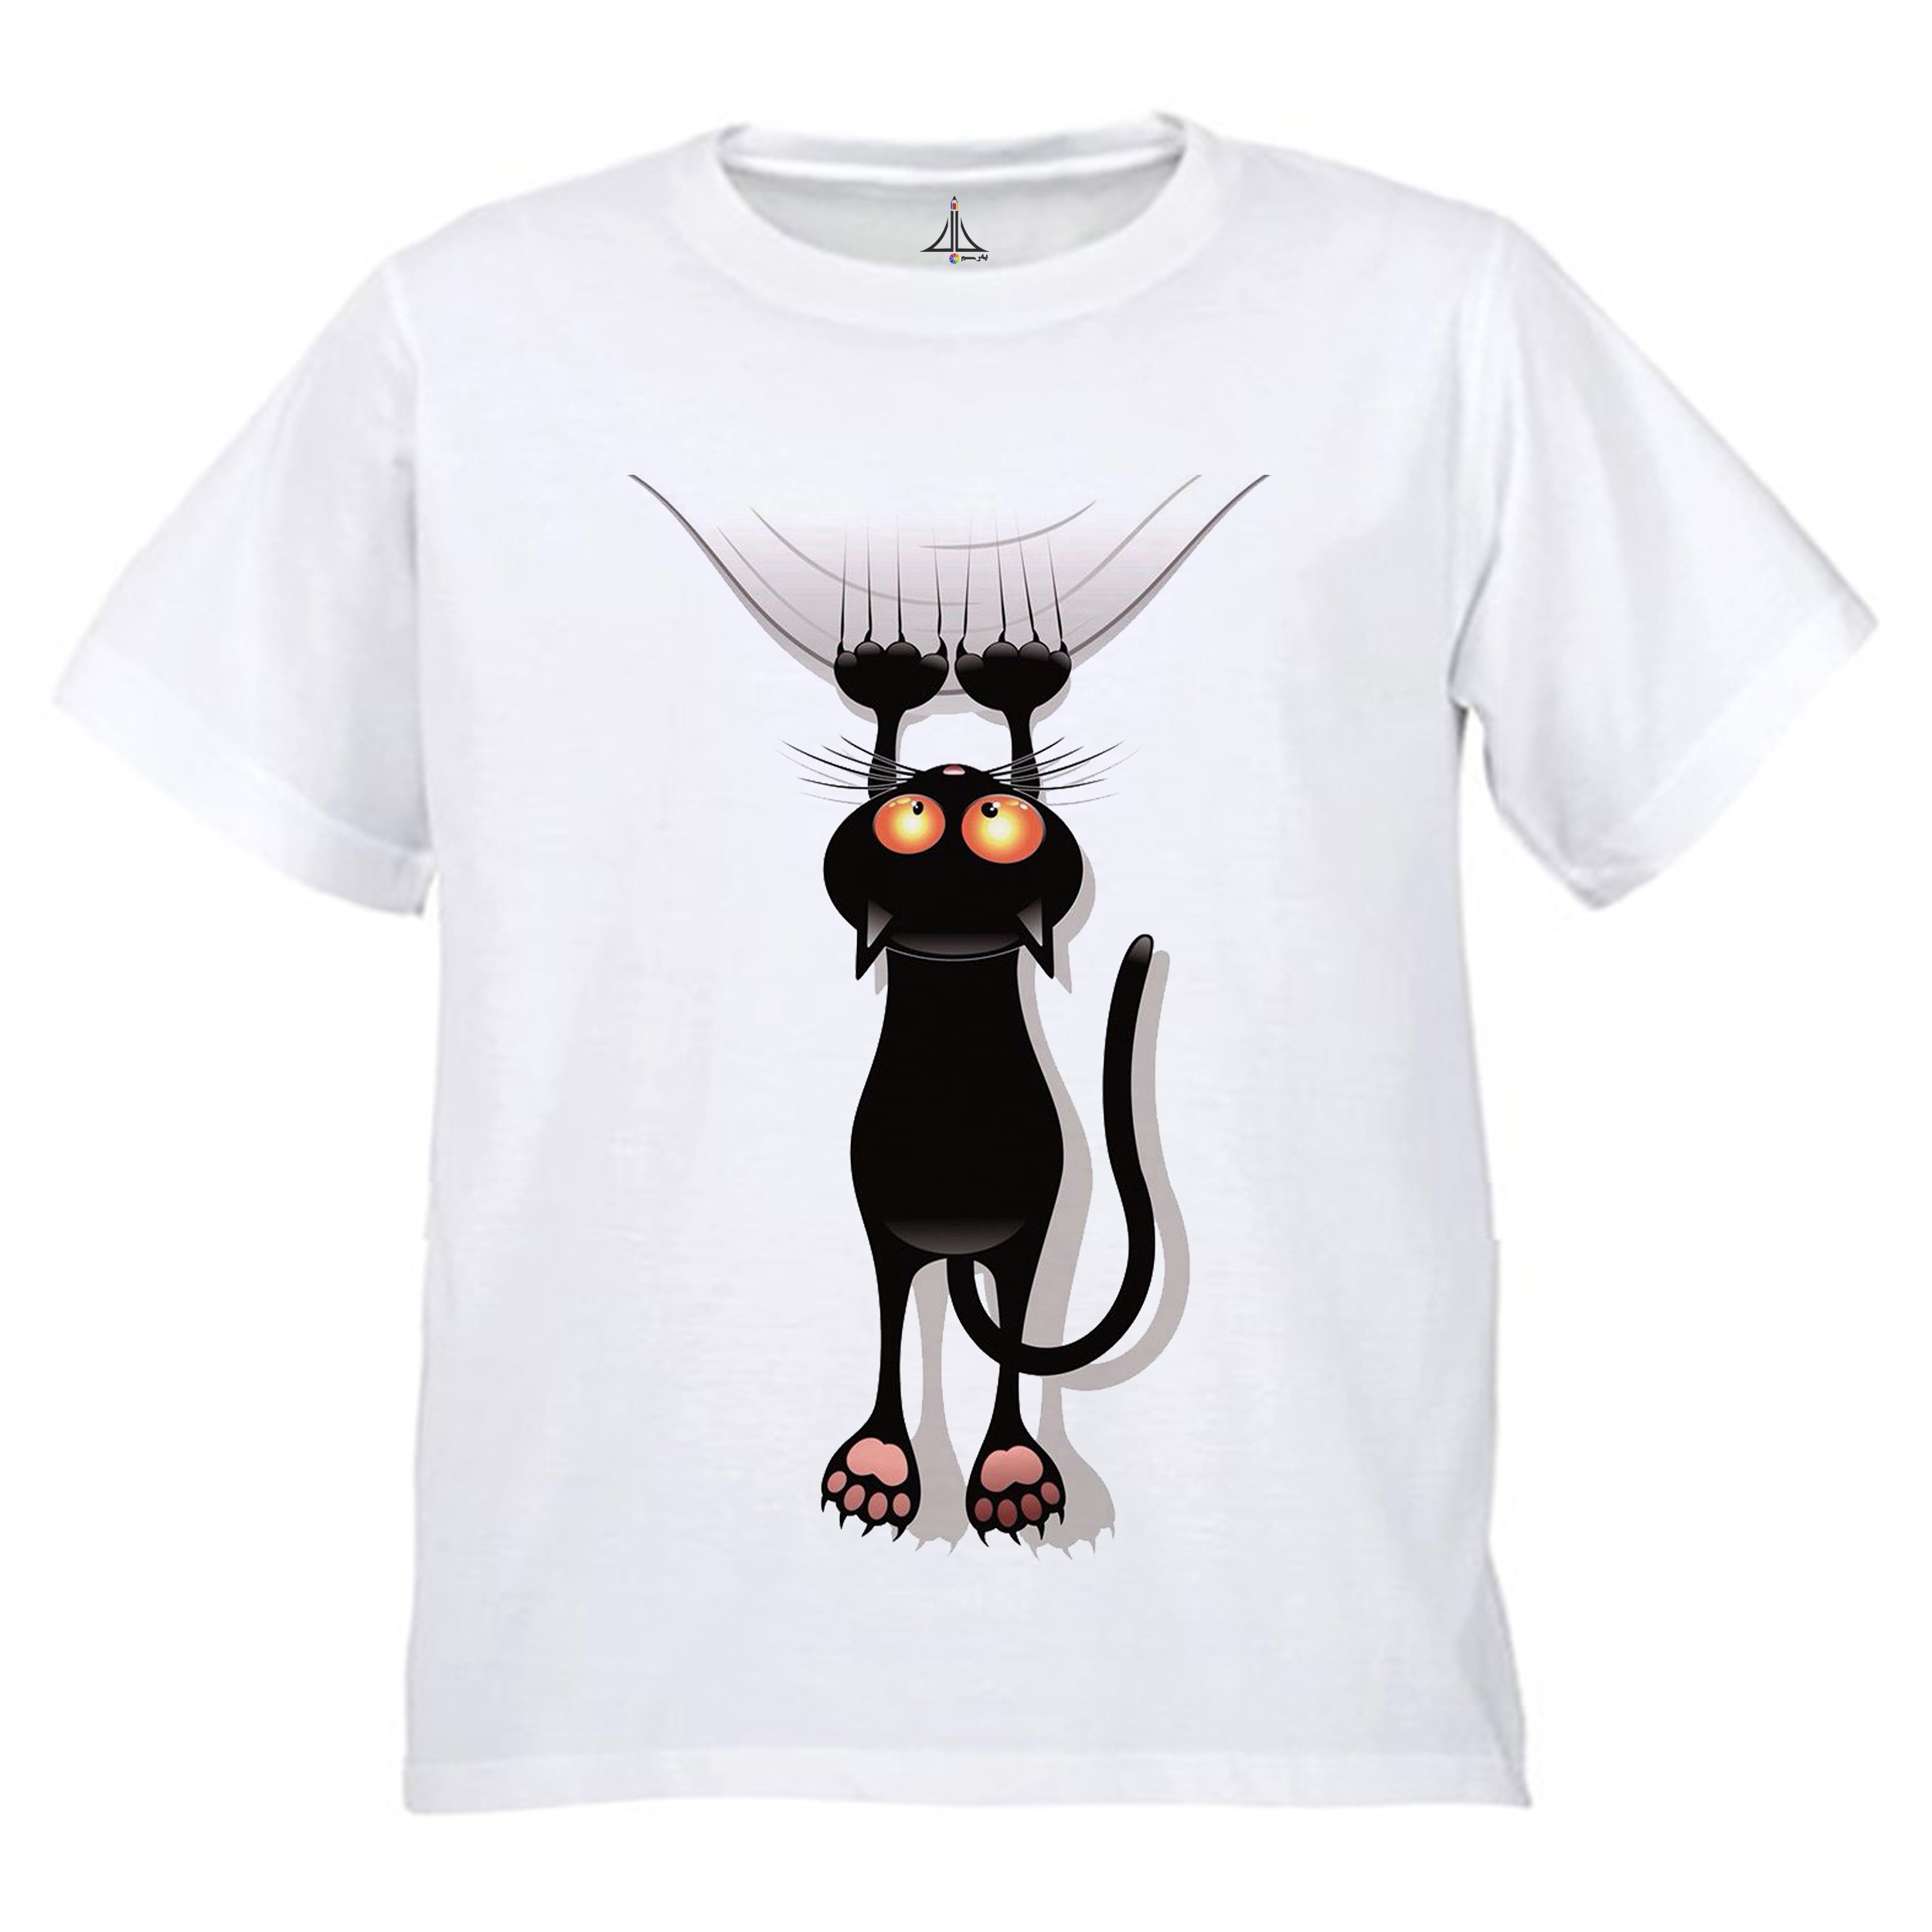 تی شرت پسرانه به رسم طرح گربه کد 9902 -  - 1